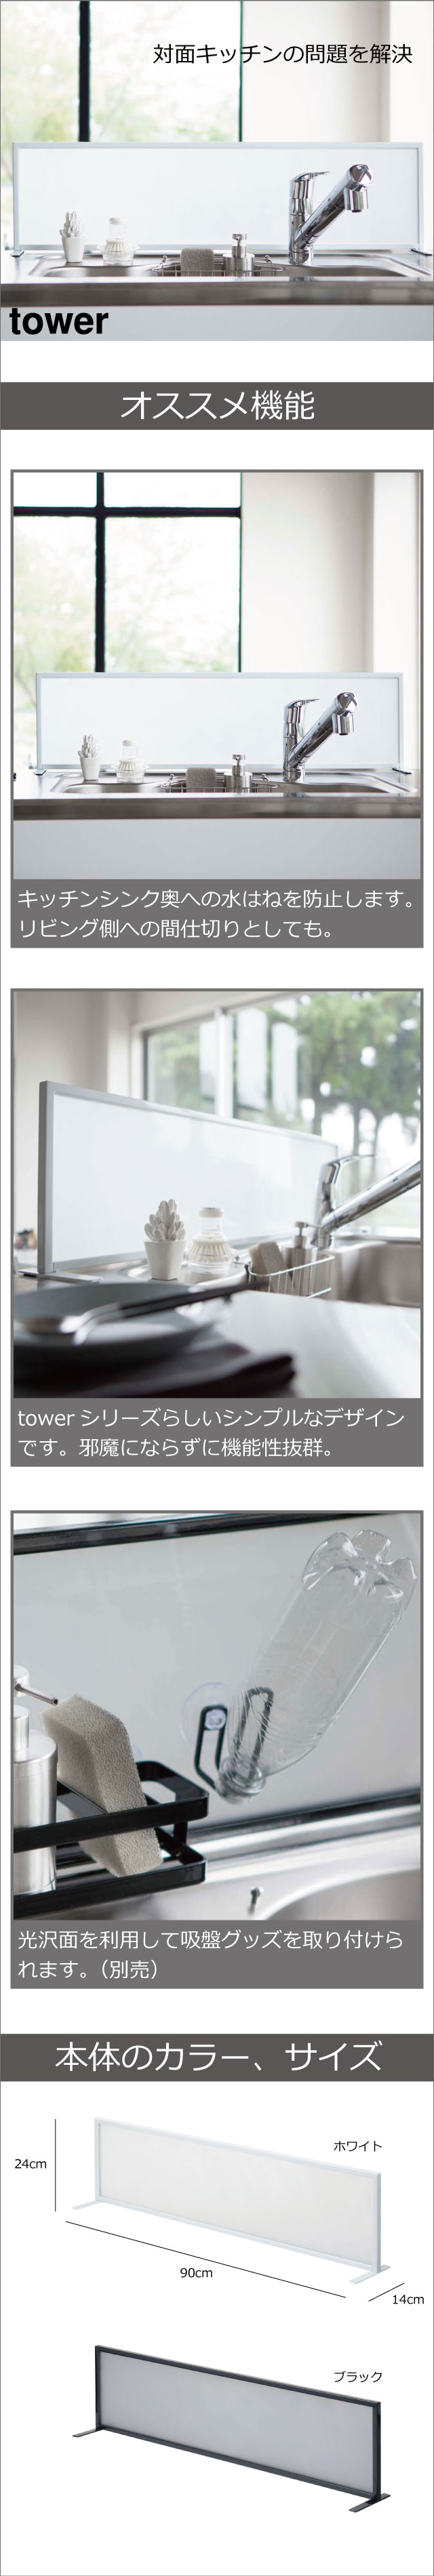 山崎実業 シンク水はね防止スクリーン タワー tower | キッチン雑貨